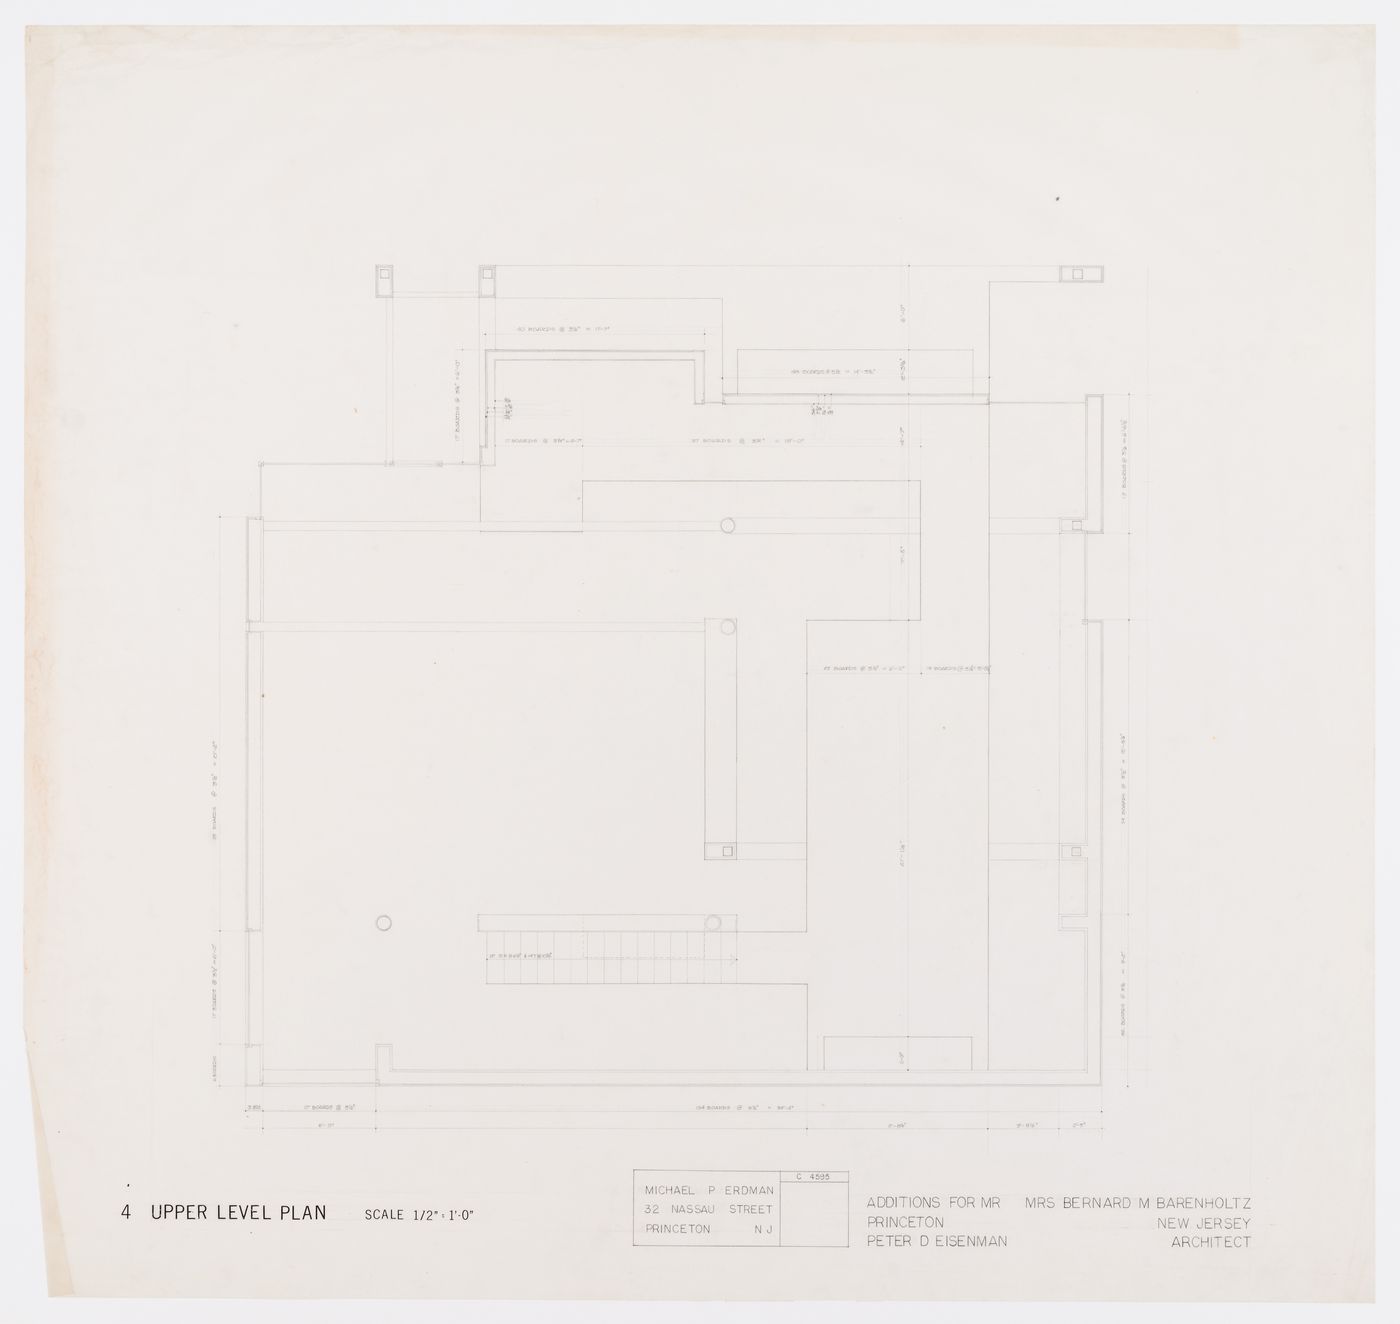 Upper level plan for Barenholtz Pavilion (House I), Princeton, New Jersey